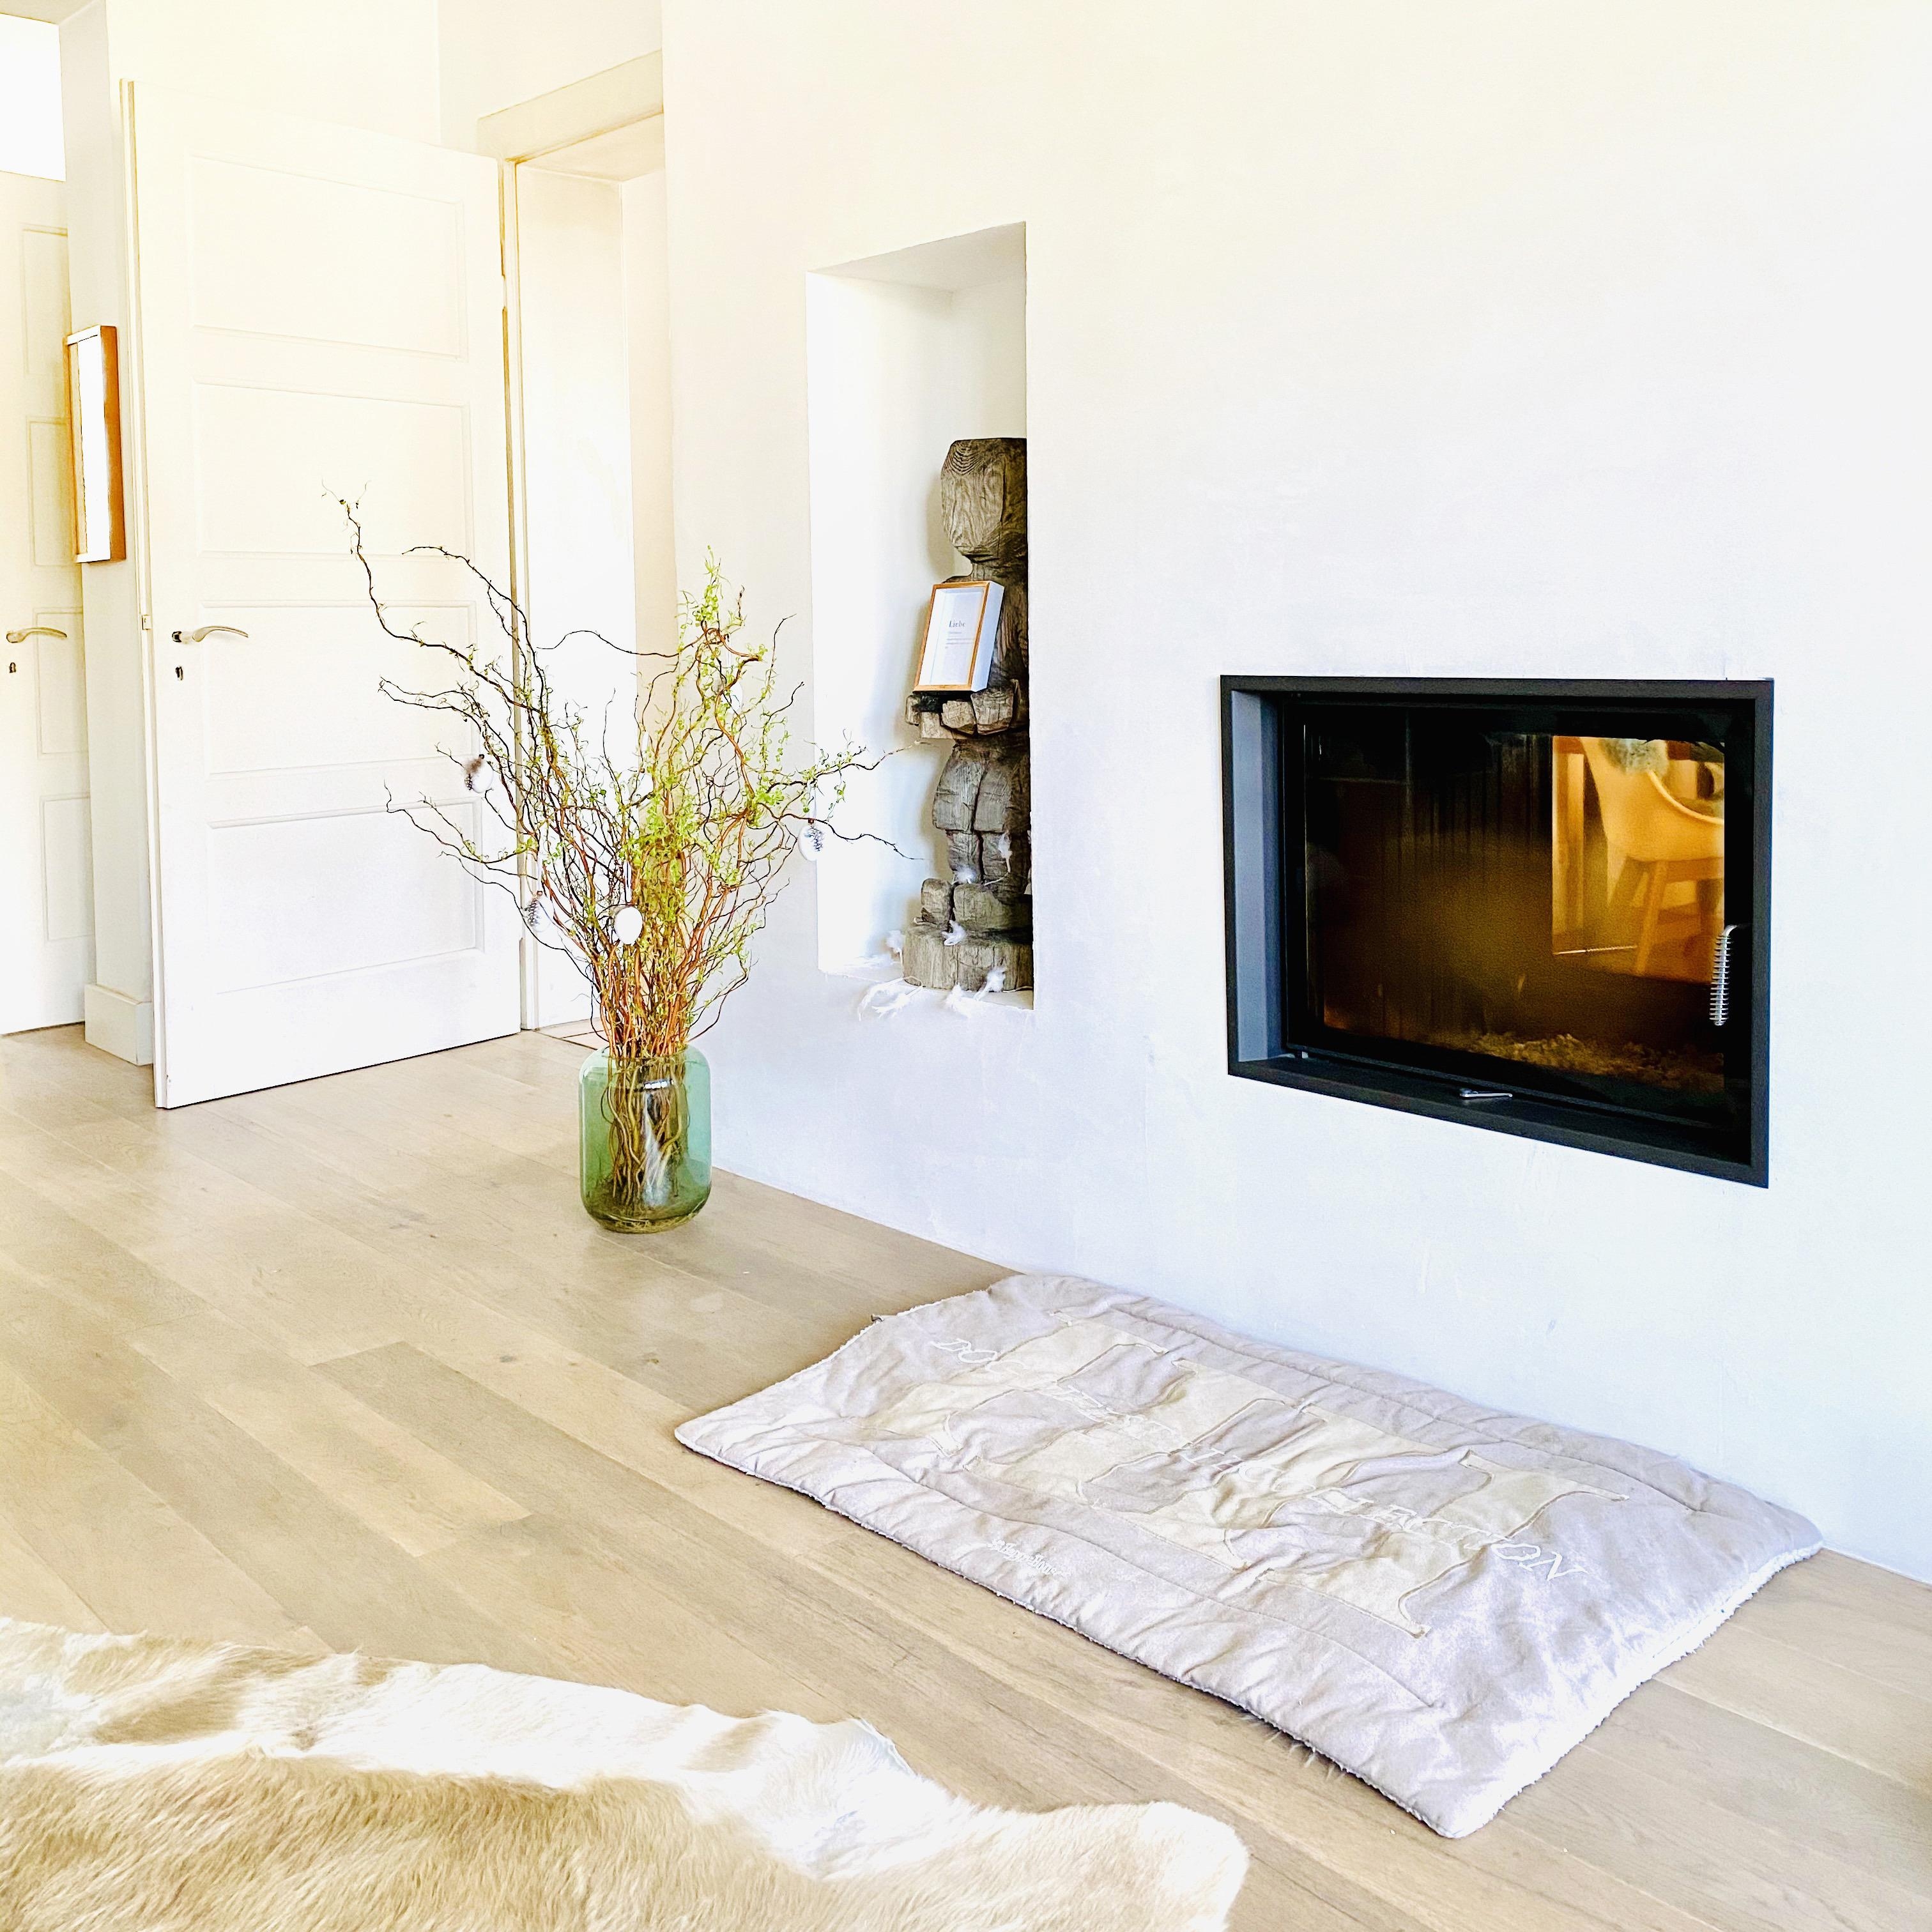 Ein bisschen Osterdeko 🐰 gibt es bereits ...
#wohnzimmer #livingroom #kamin #altbau #osterstrauch #whiteliving